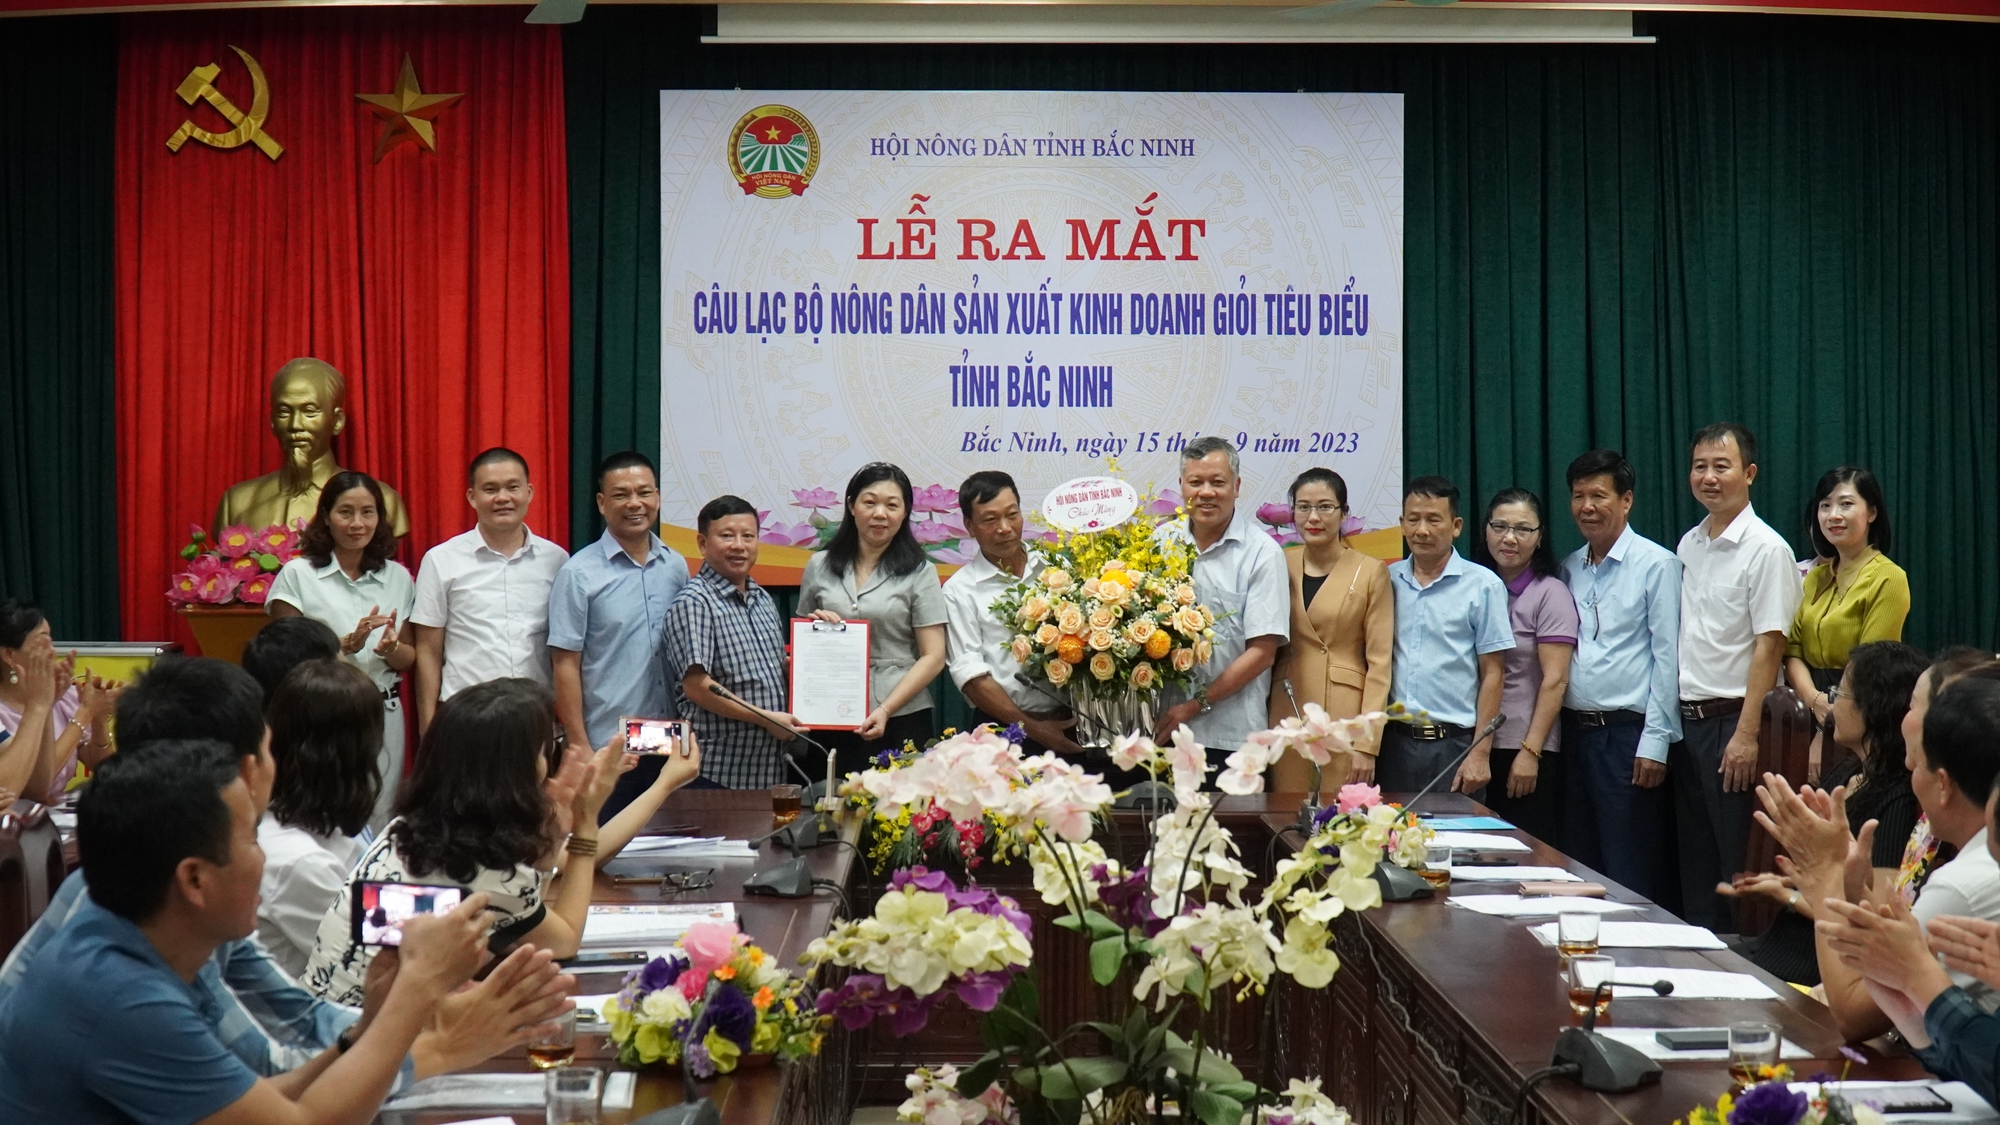 Hội Nông dân tỉnh Bắc Ninh ra mắt Câu lạc bộ nông dân sản xuất kinh doanh giỏi tiêu biểu  - Ảnh 1.